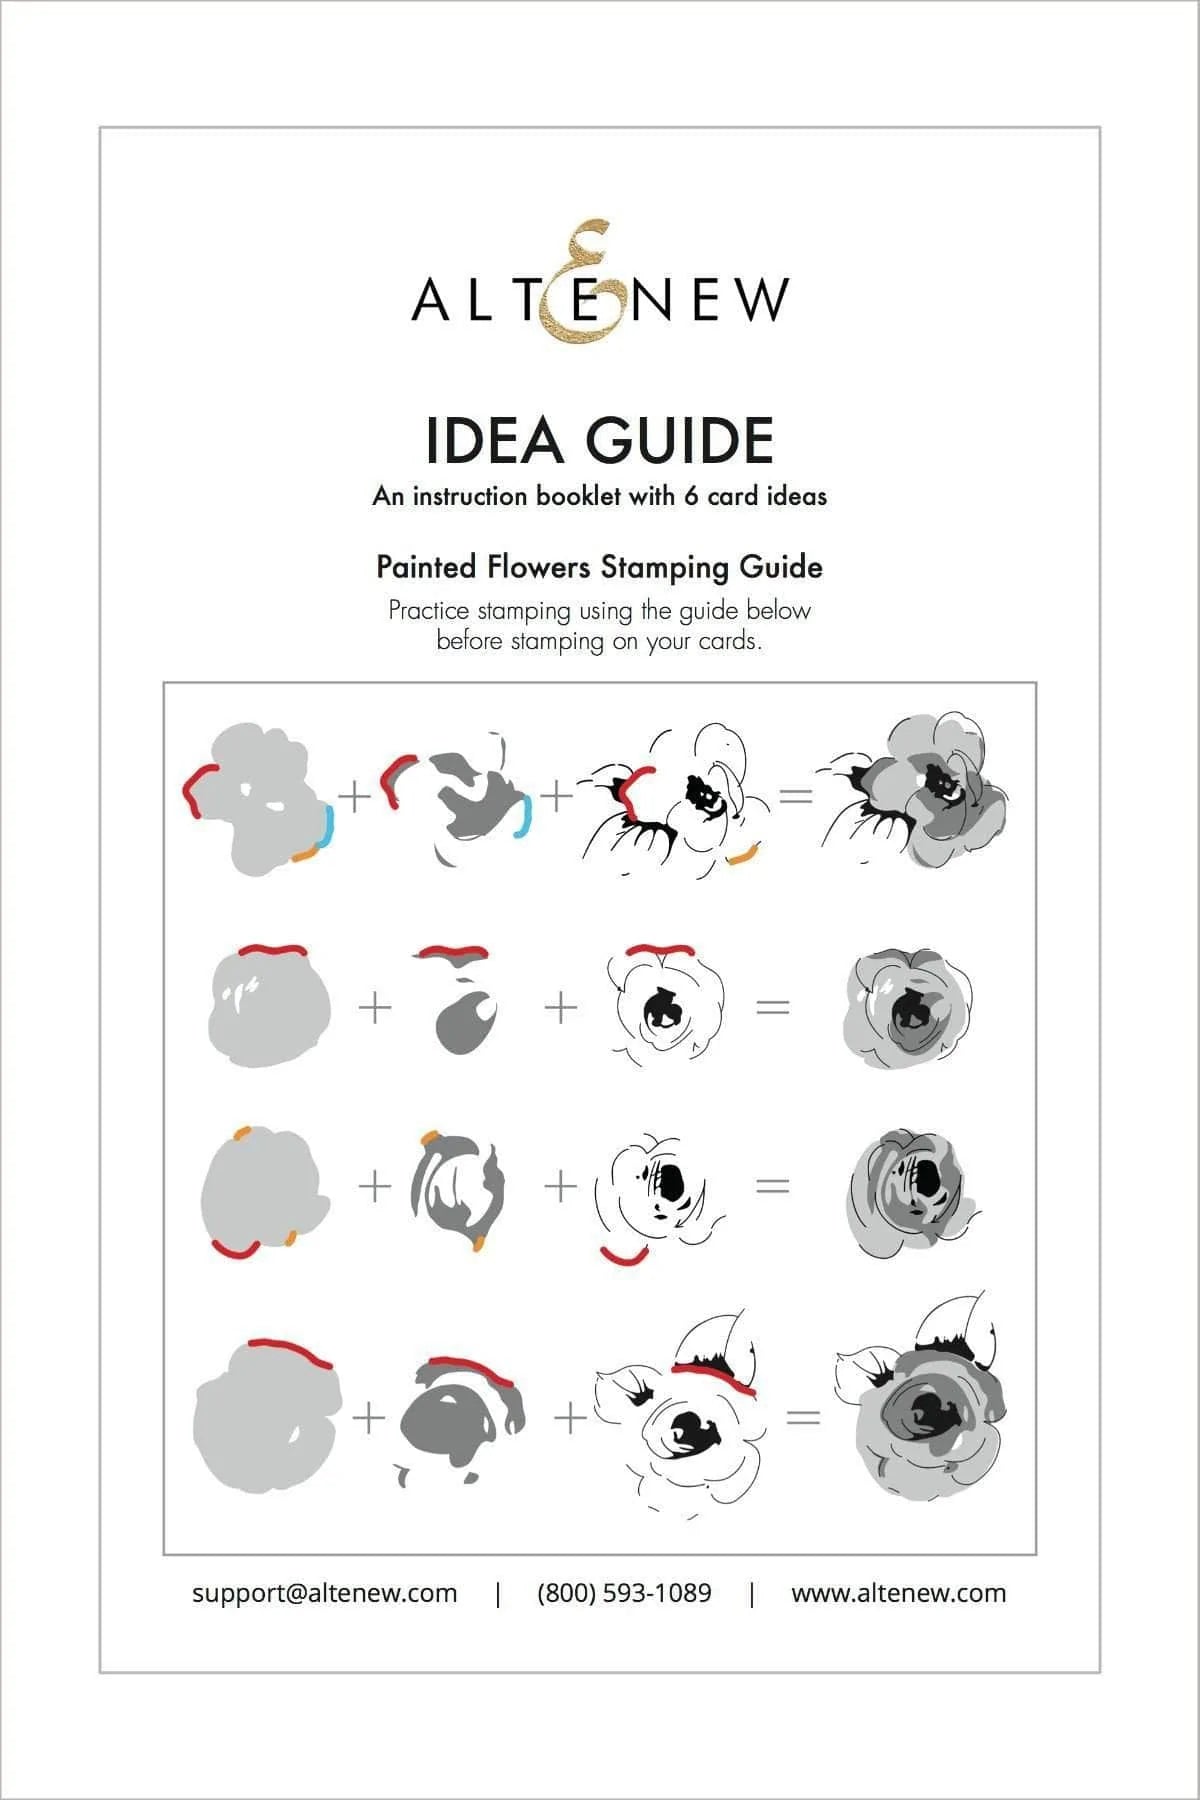 Printed Media Altenew Card Idea Guide